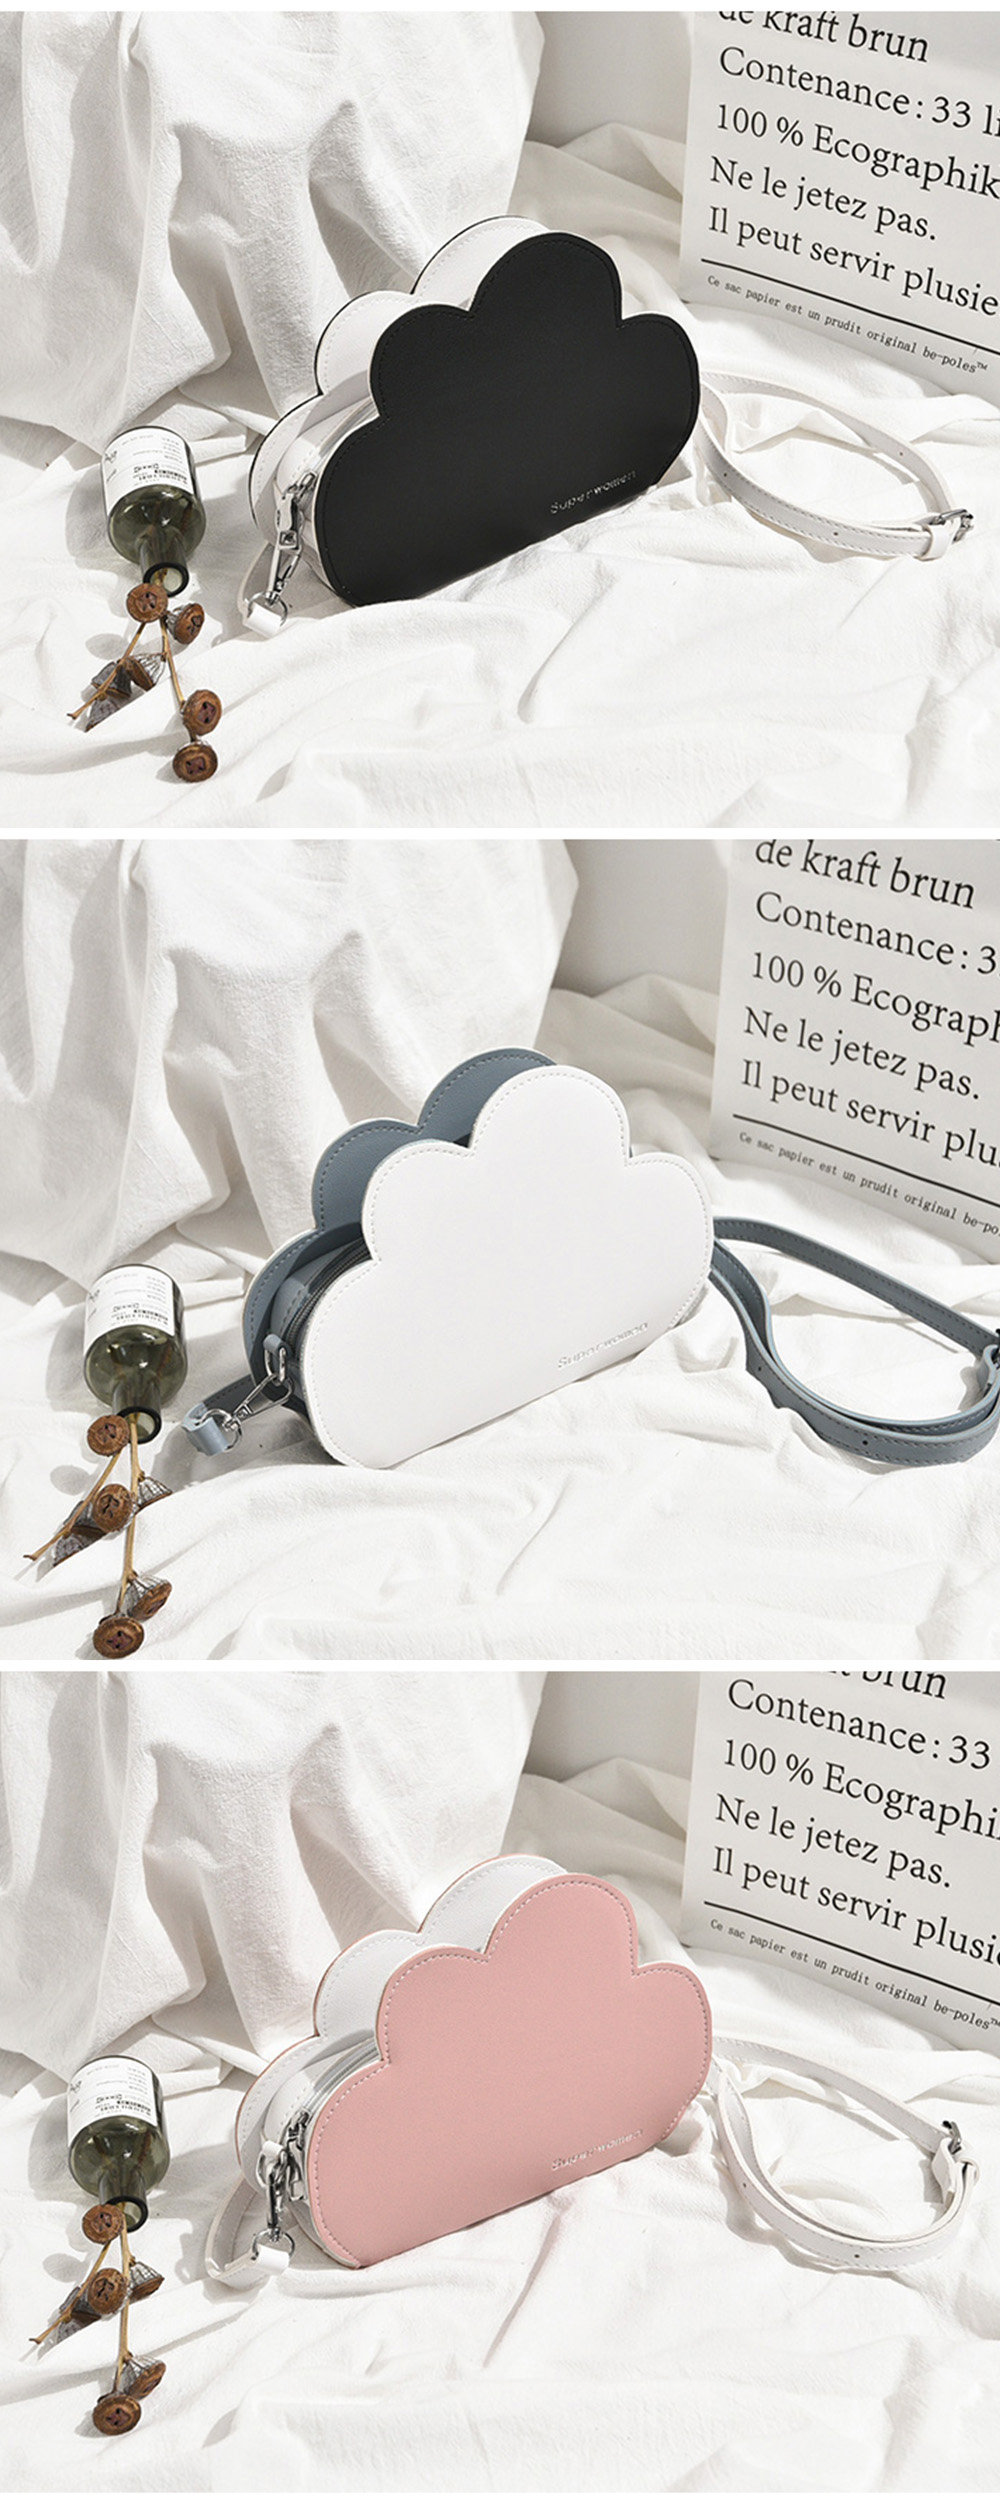 lulu&lucy cloud like shape pouch large| Alibaba.com